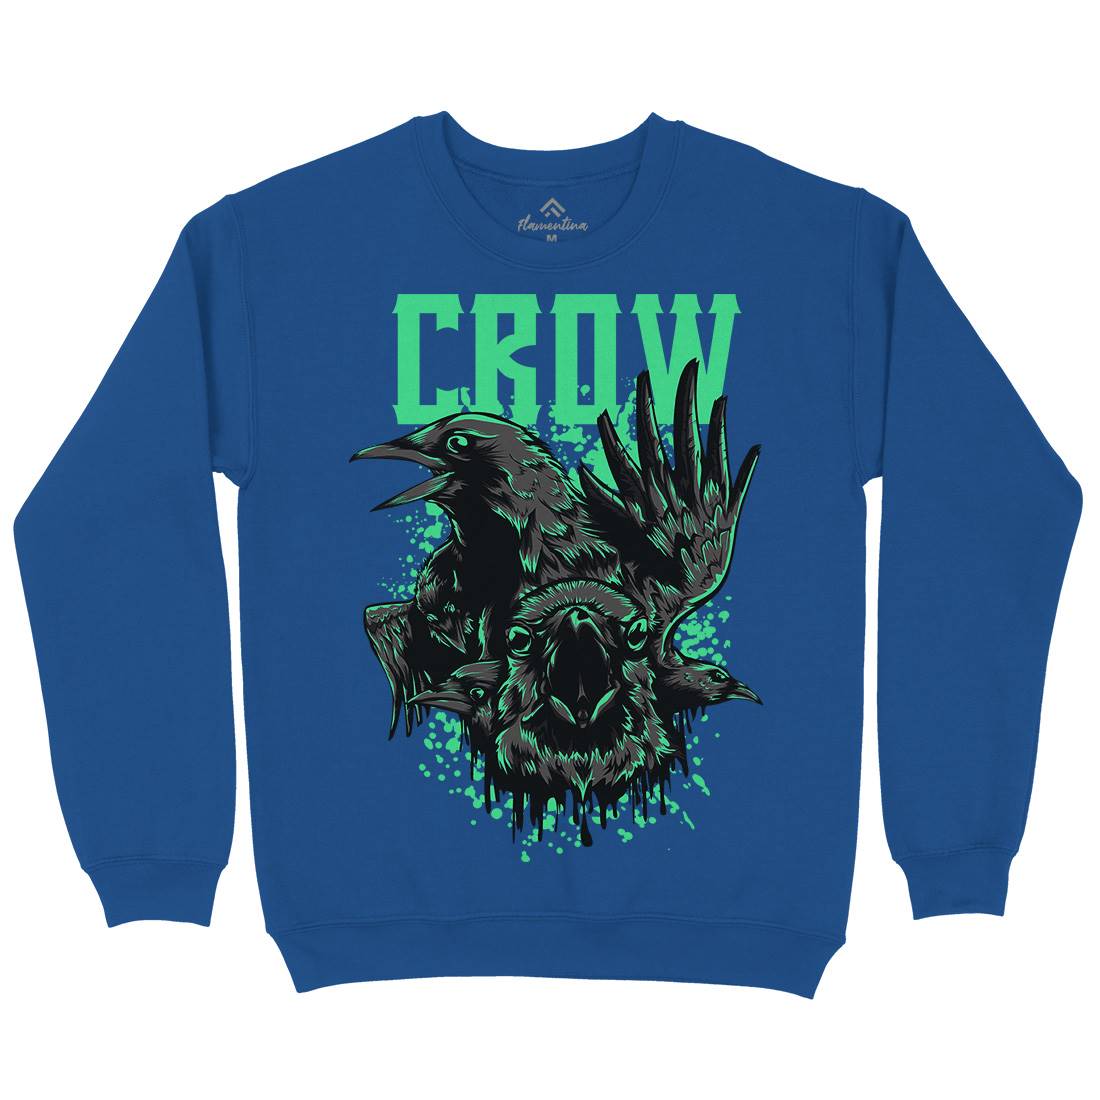 Crow Kids Crew Neck Sweatshirt Horror D850